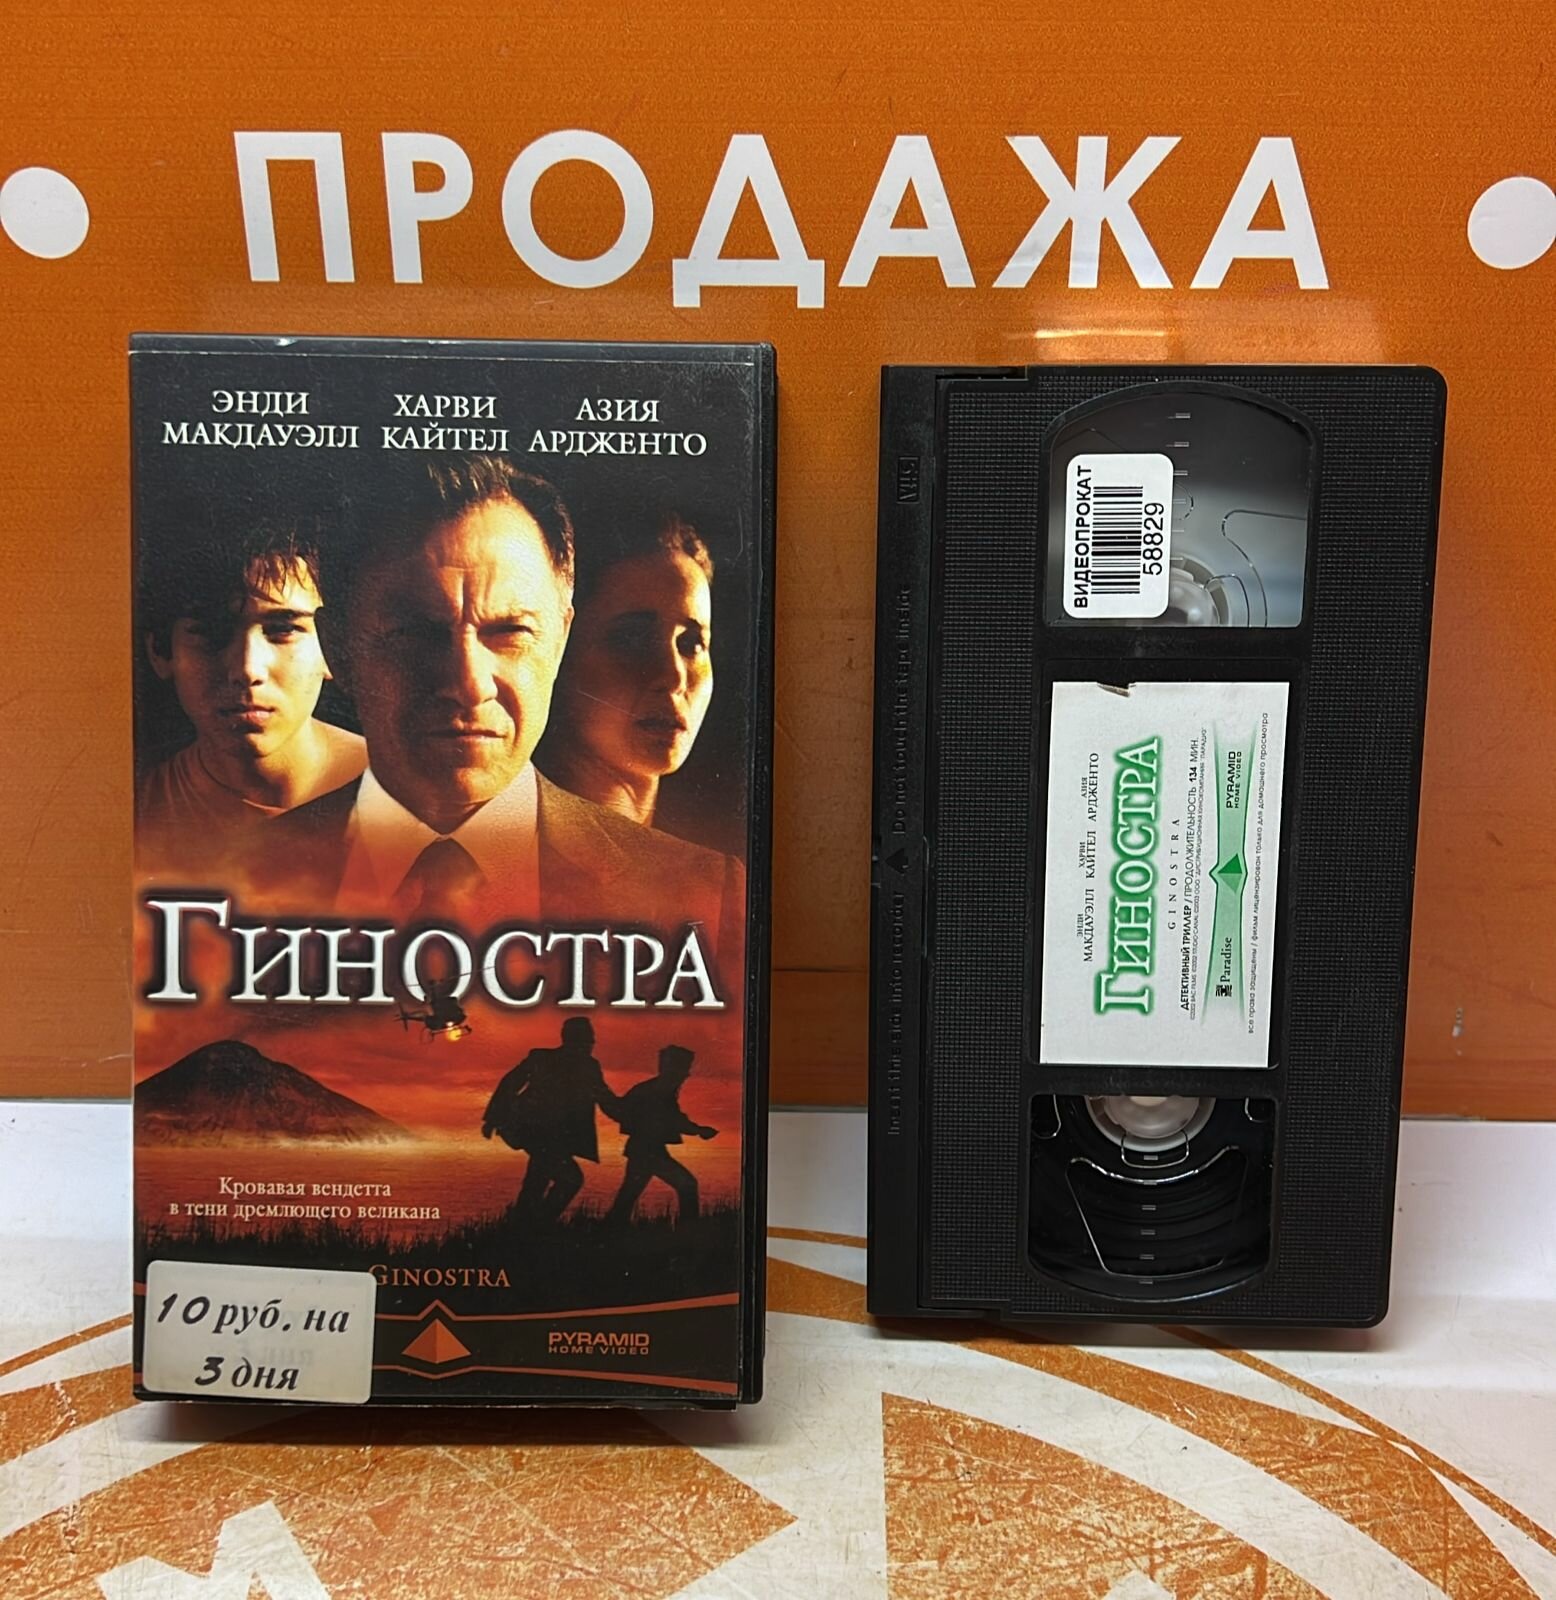 VHS-кассета "Гиностра"